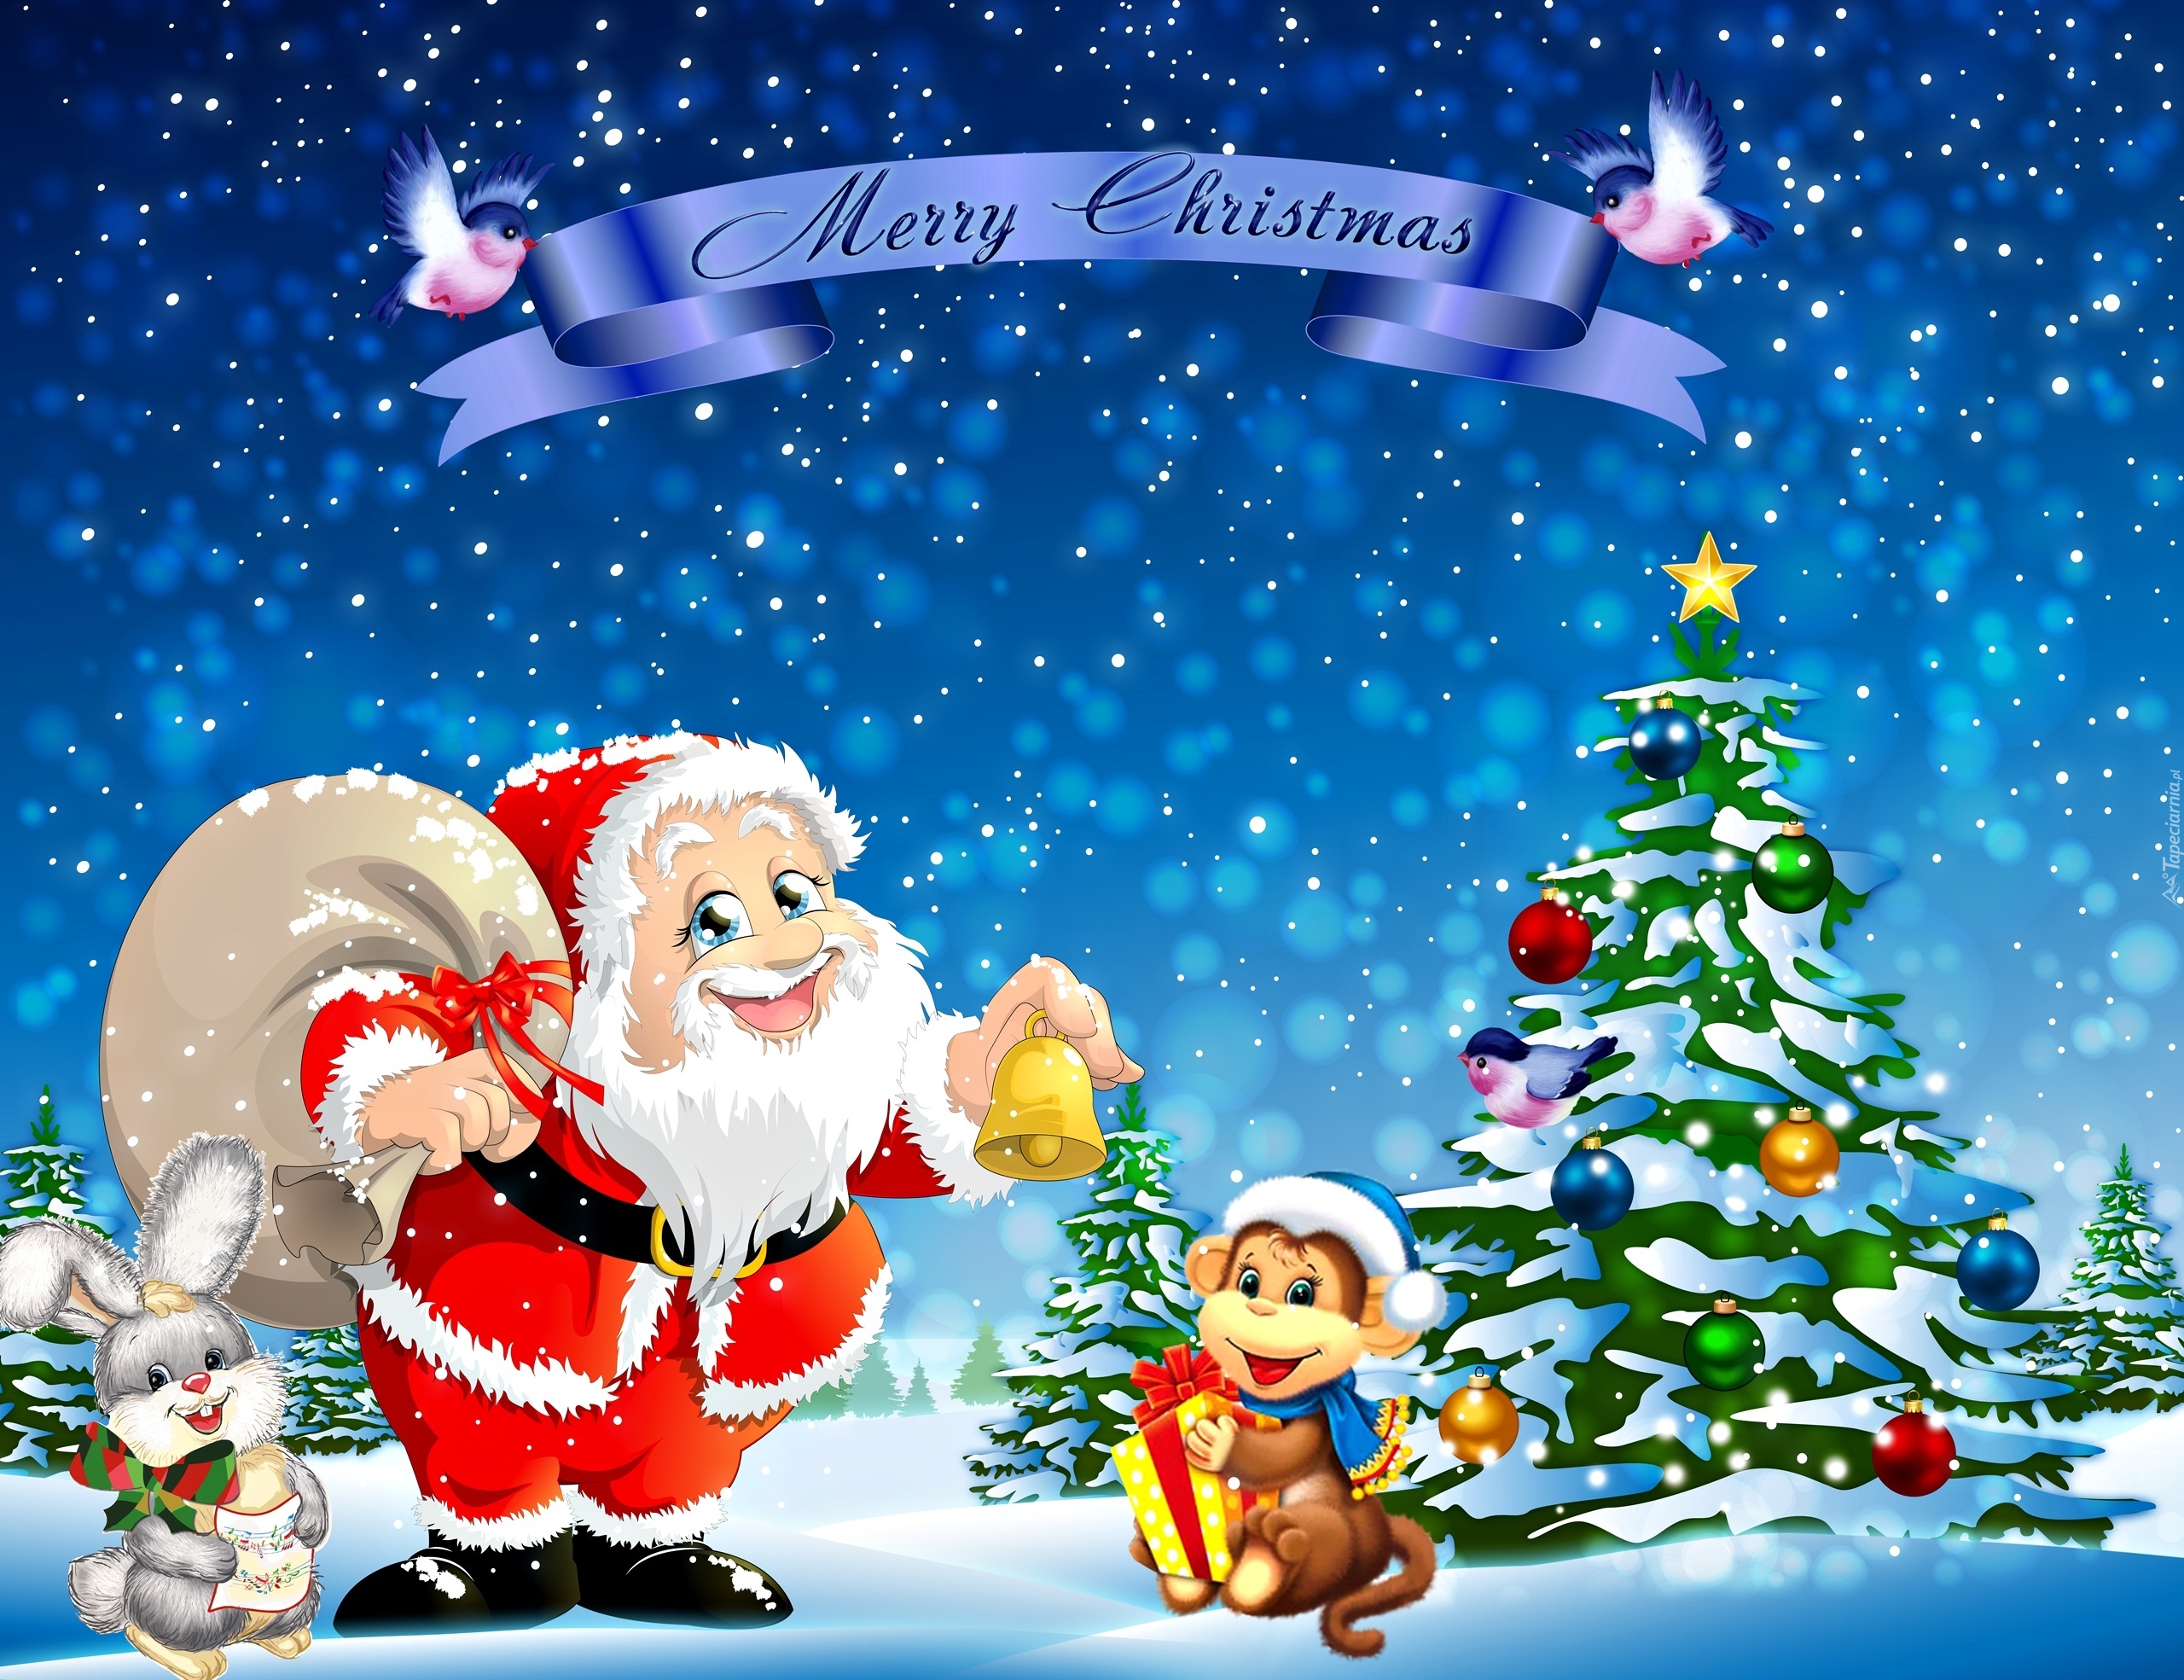 Mikołaj, Choinka, Boże Narodzenie